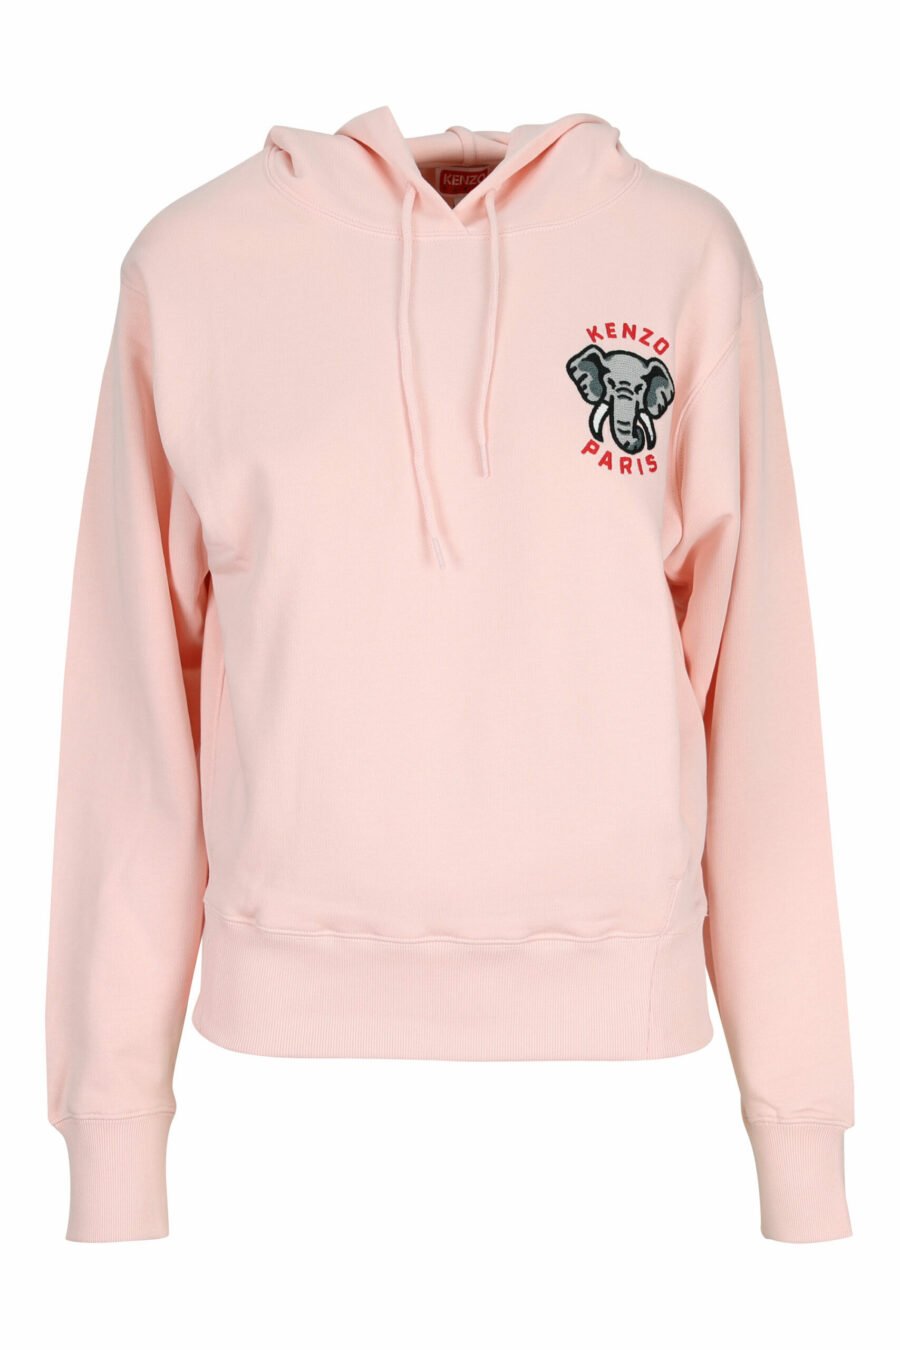 Camisola com capuz rosa com mini logótipo "kenzo elephant" - 3612230620001